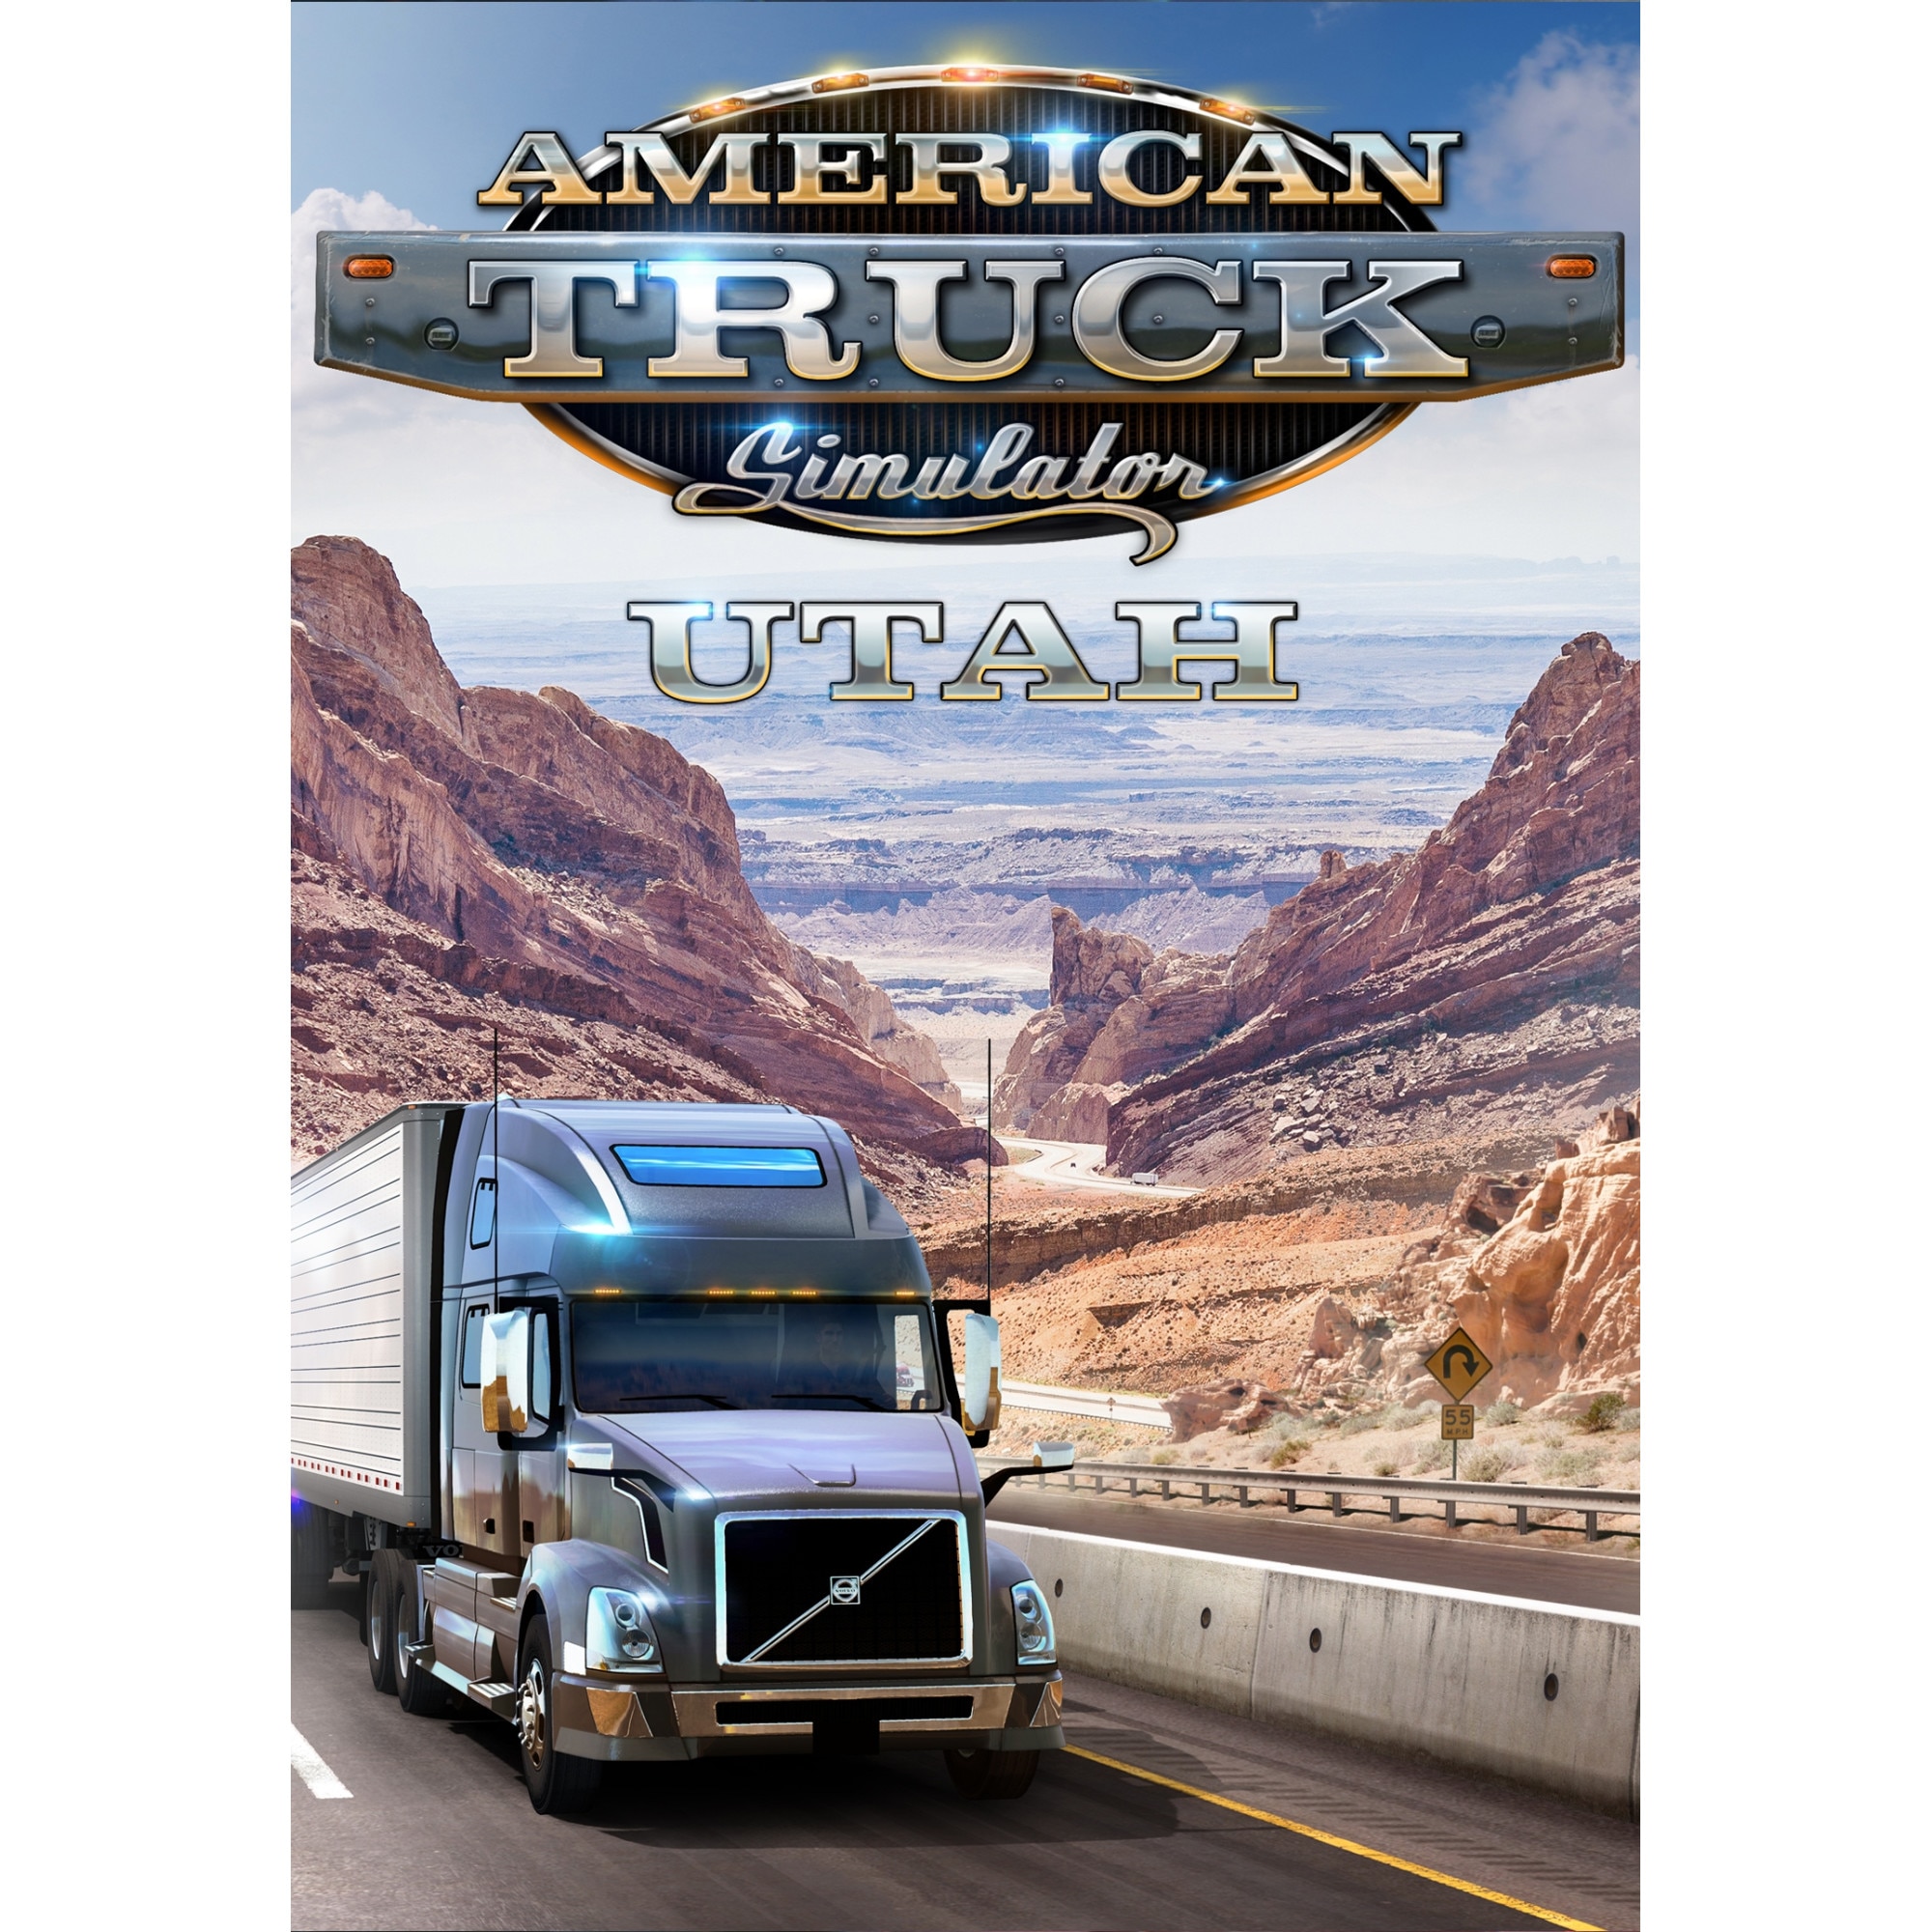 joc-american-truck-simulator-utah-dlc-steam-key-global-pc-cod-activare-instant-emag-ro